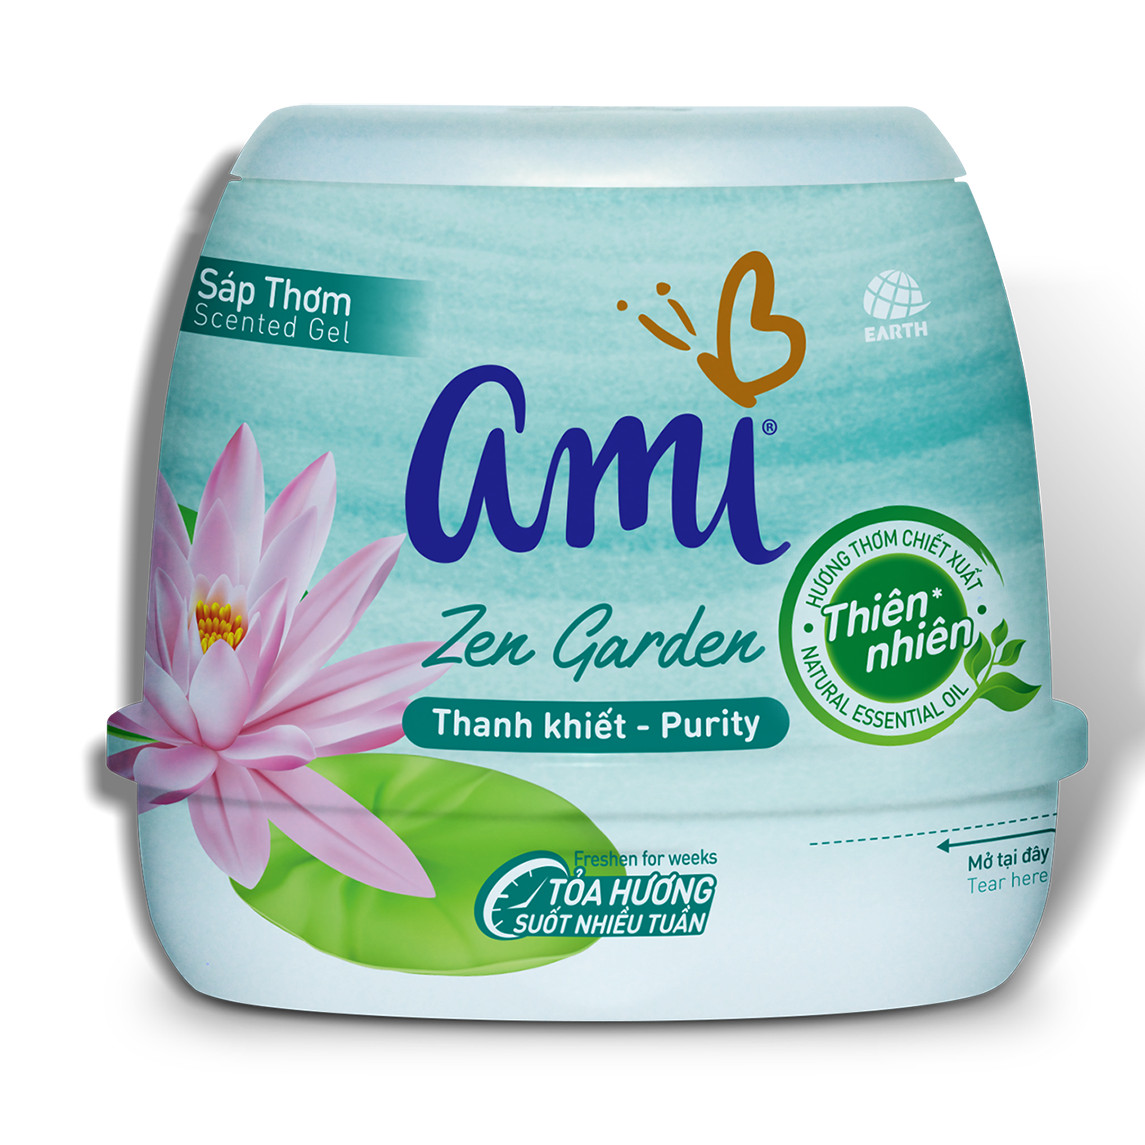 Sáp thơm khử mùi Ami 200 g - (Nhiều mùi hương) hương thơm chiết xuất thiên nhiên